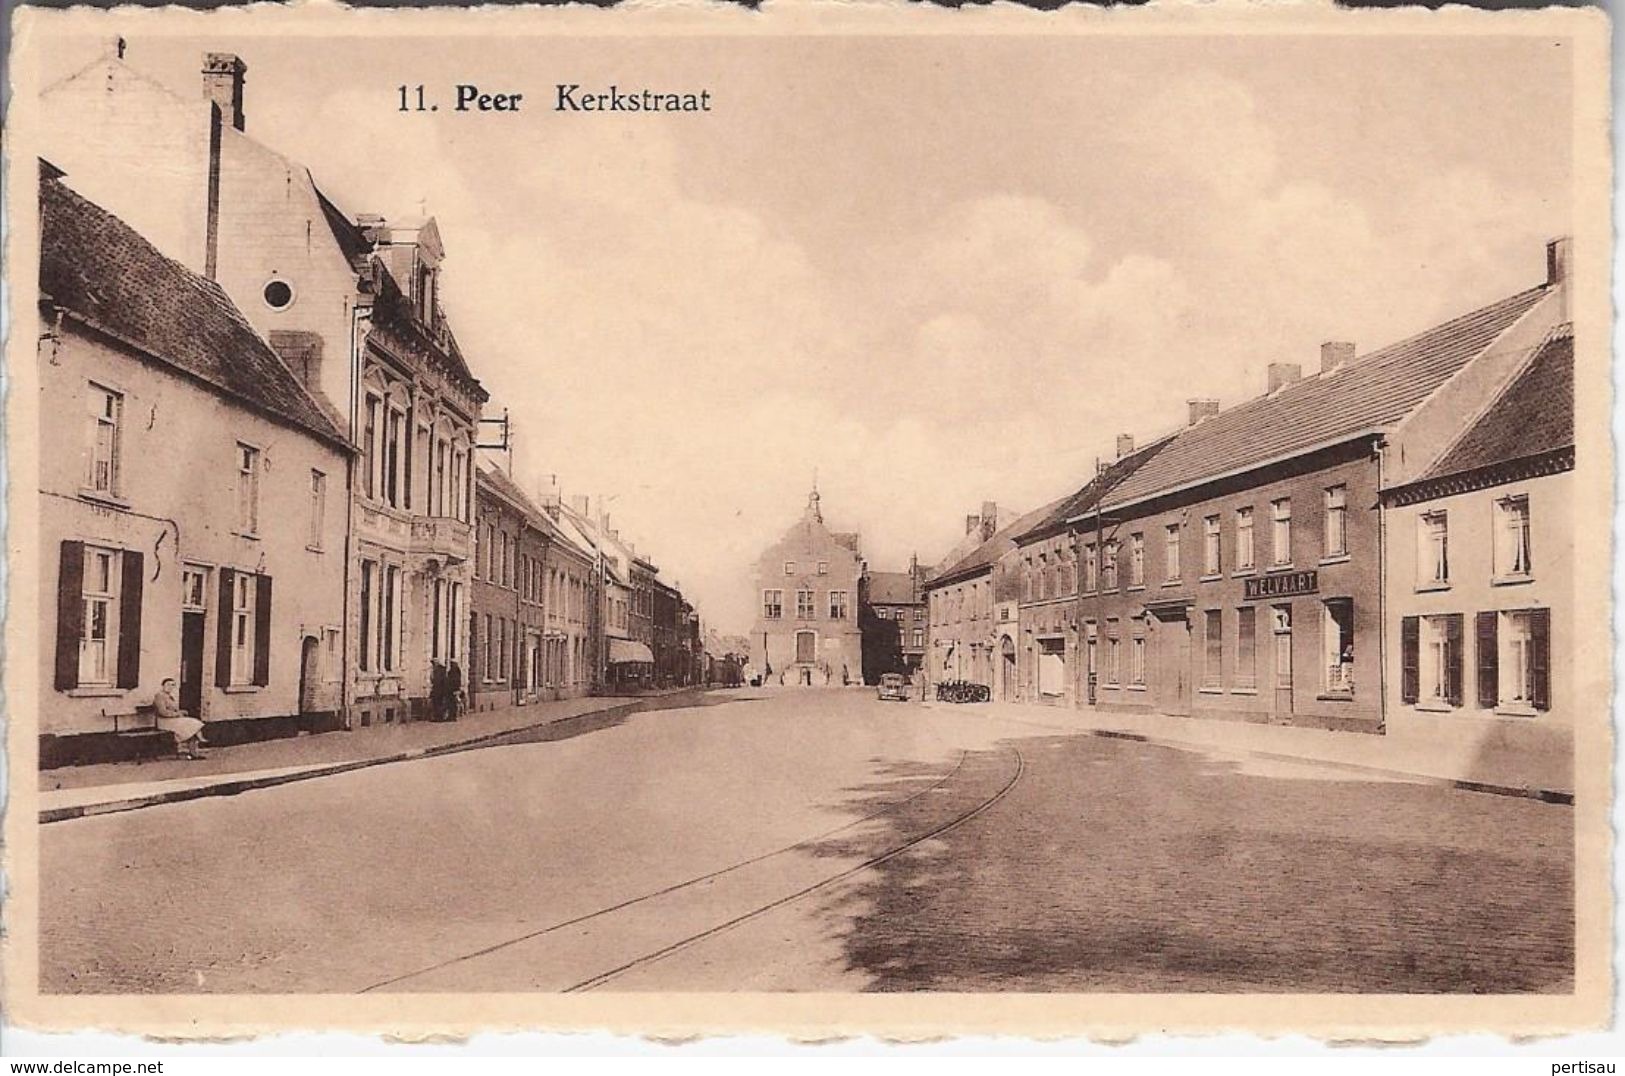 Kerkstraat - Peer